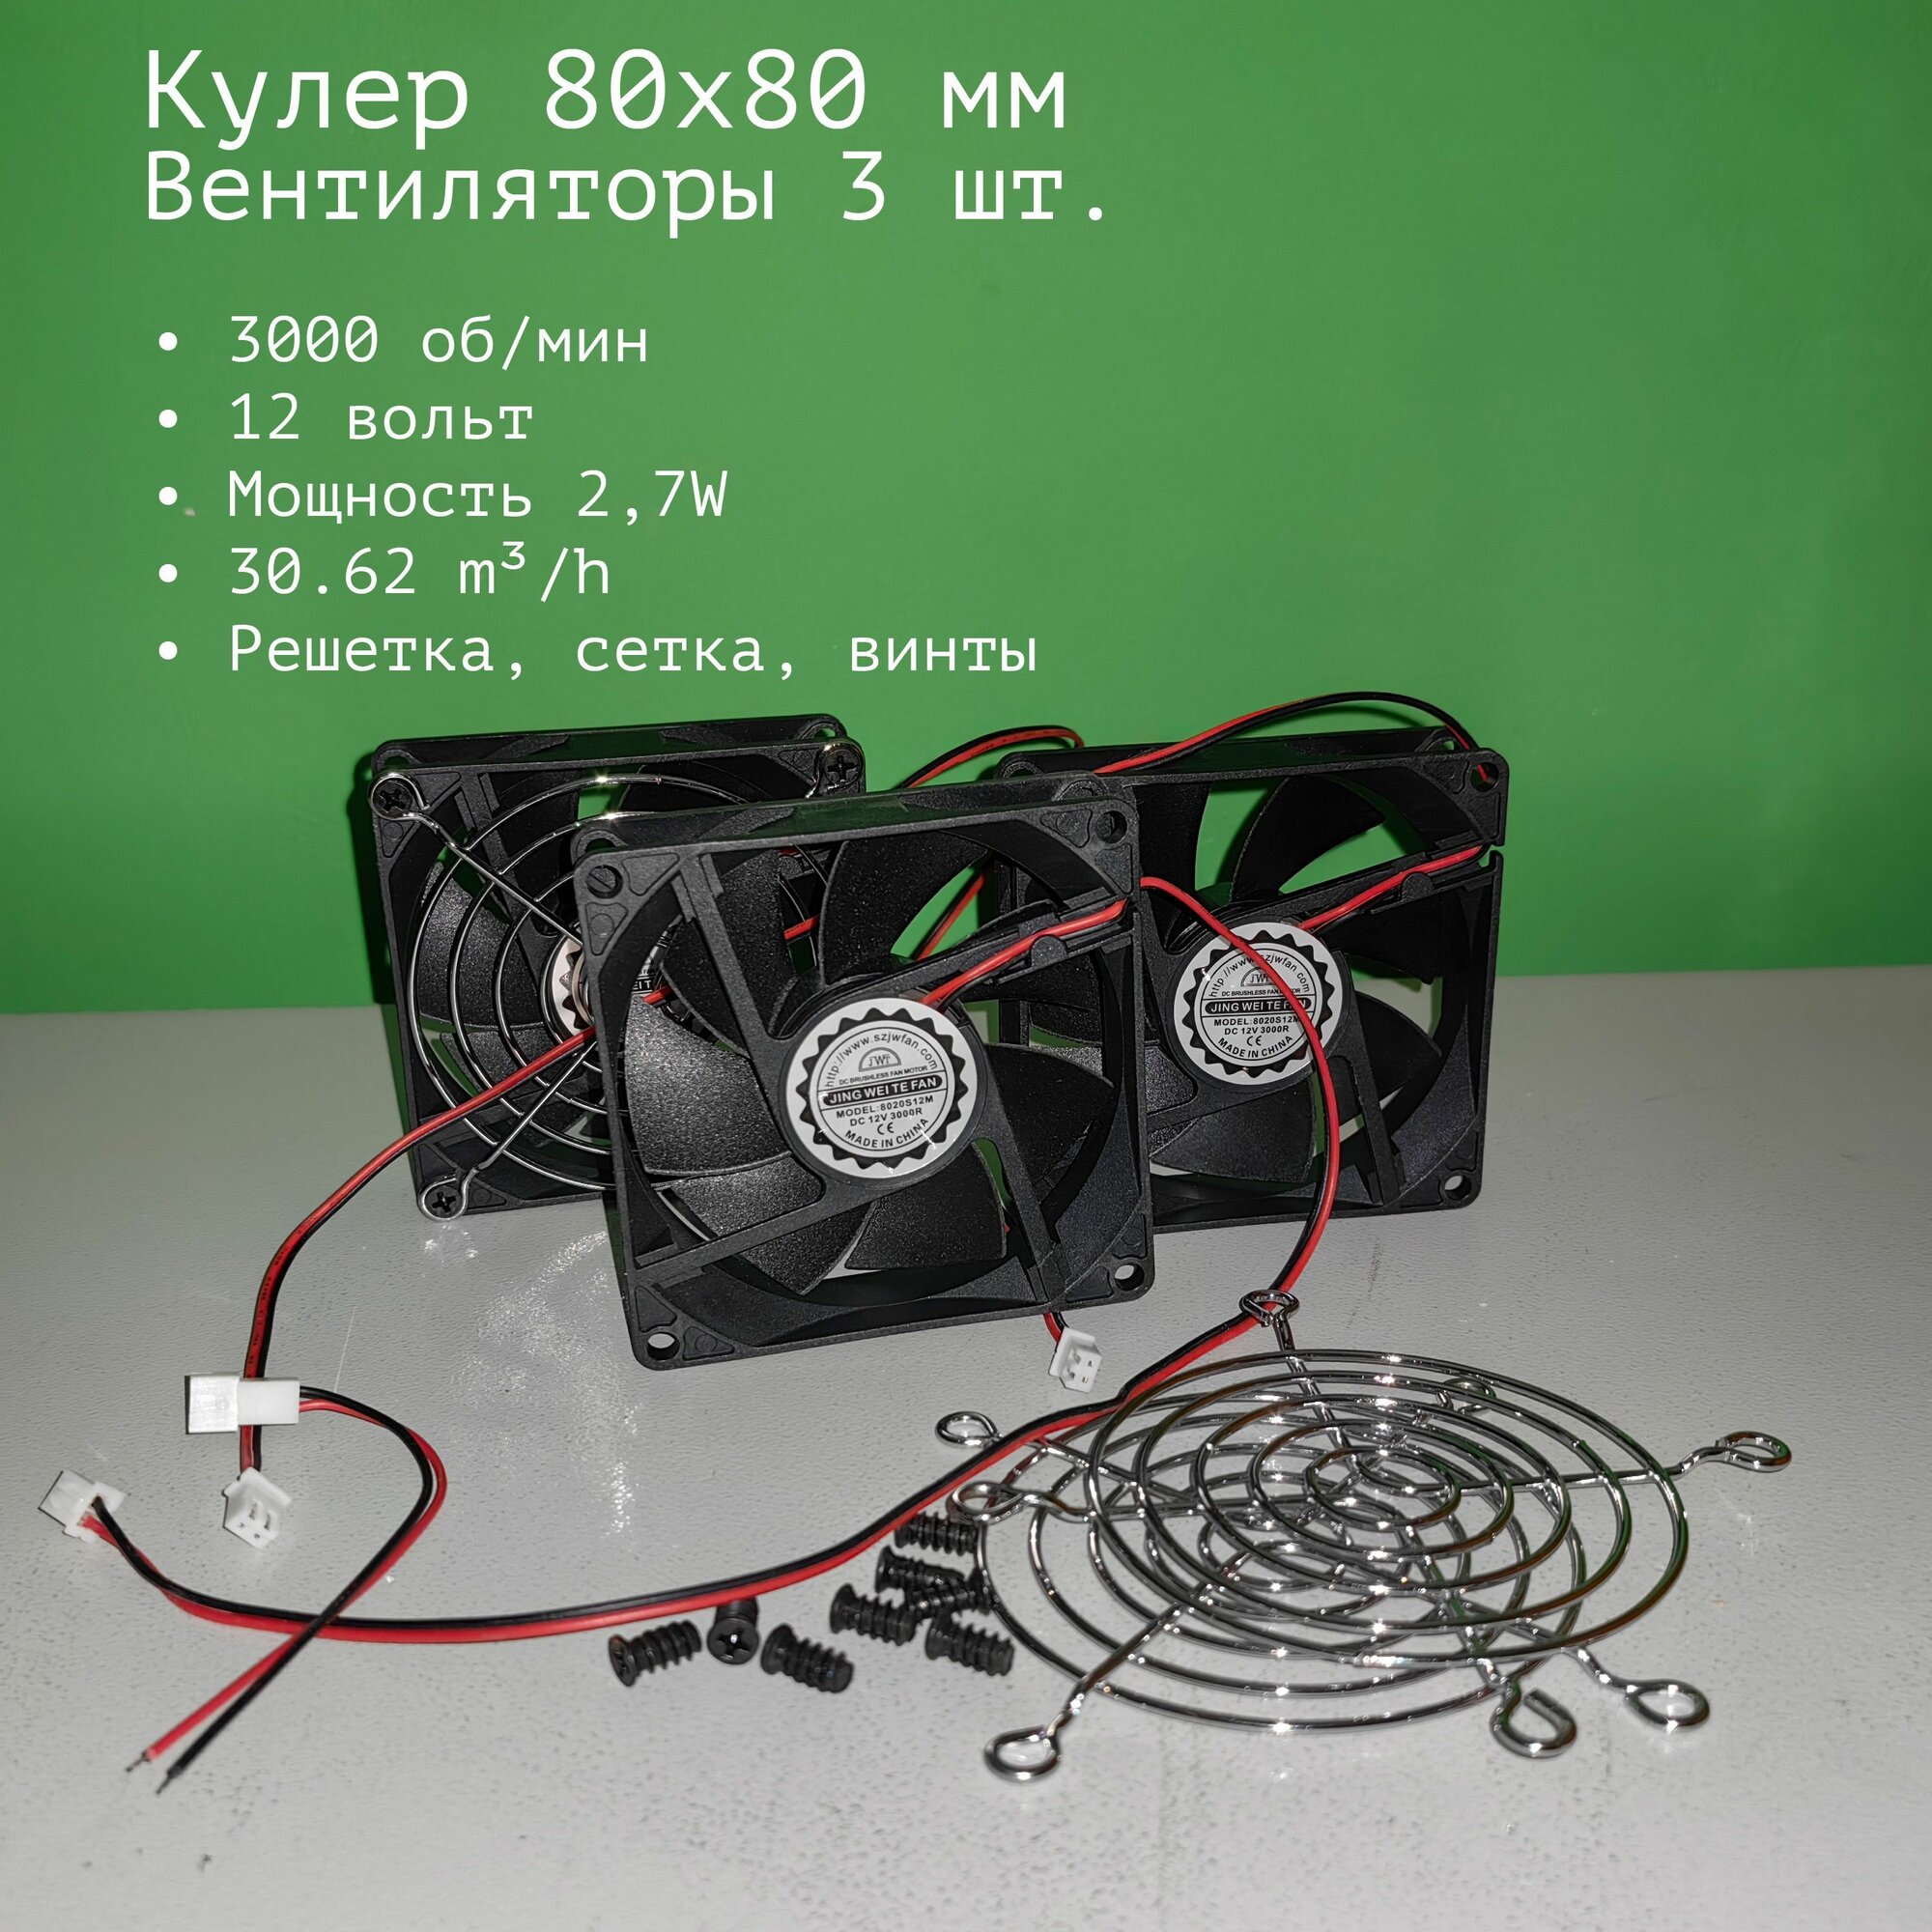 Компьютерный вентилятор 12 вольт, 80x80, 2-пин (3 шт)